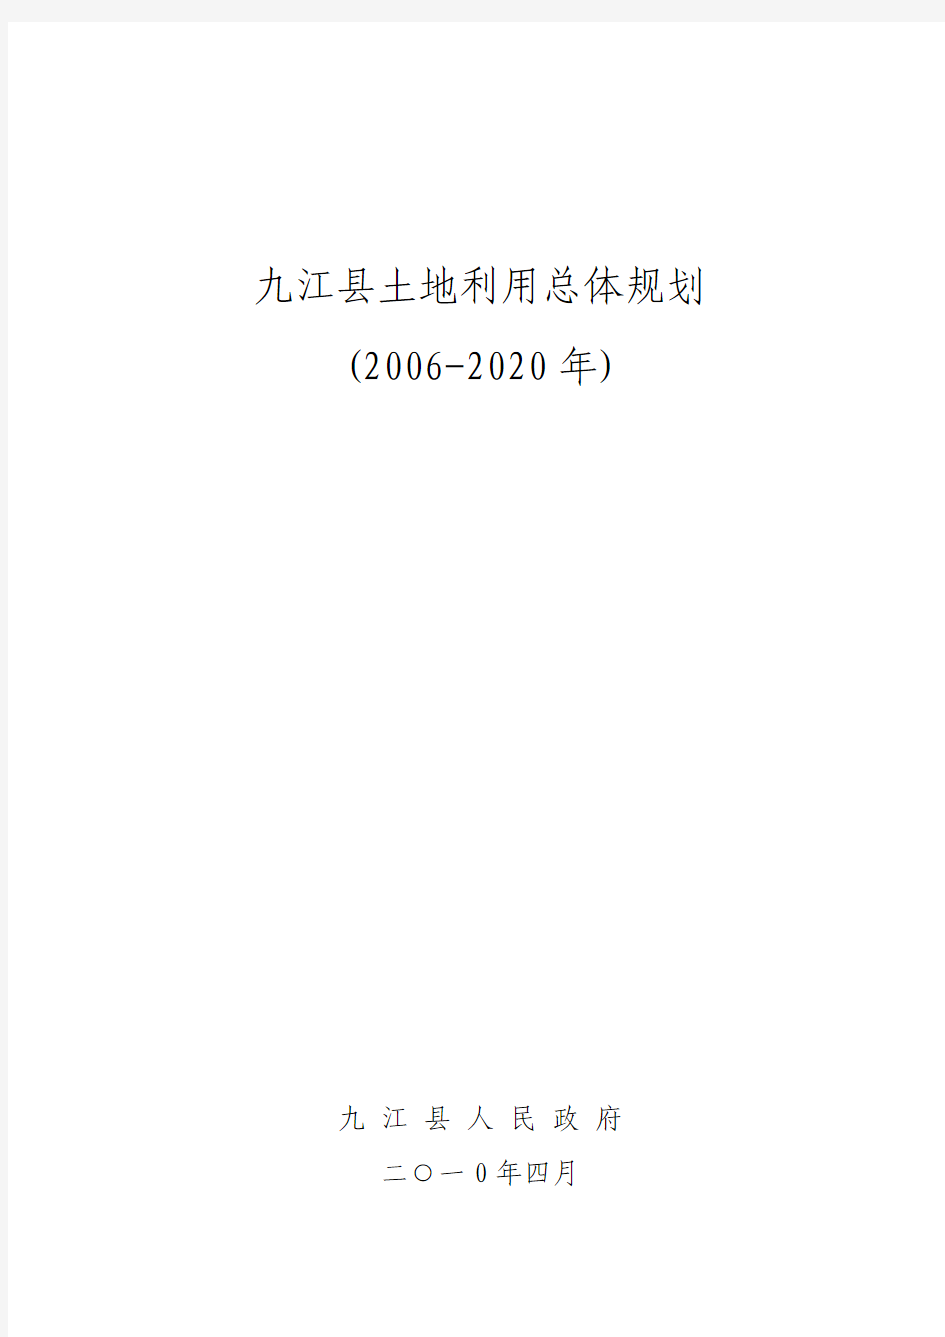 九江县土地利用总体规划文本(2006-2020)